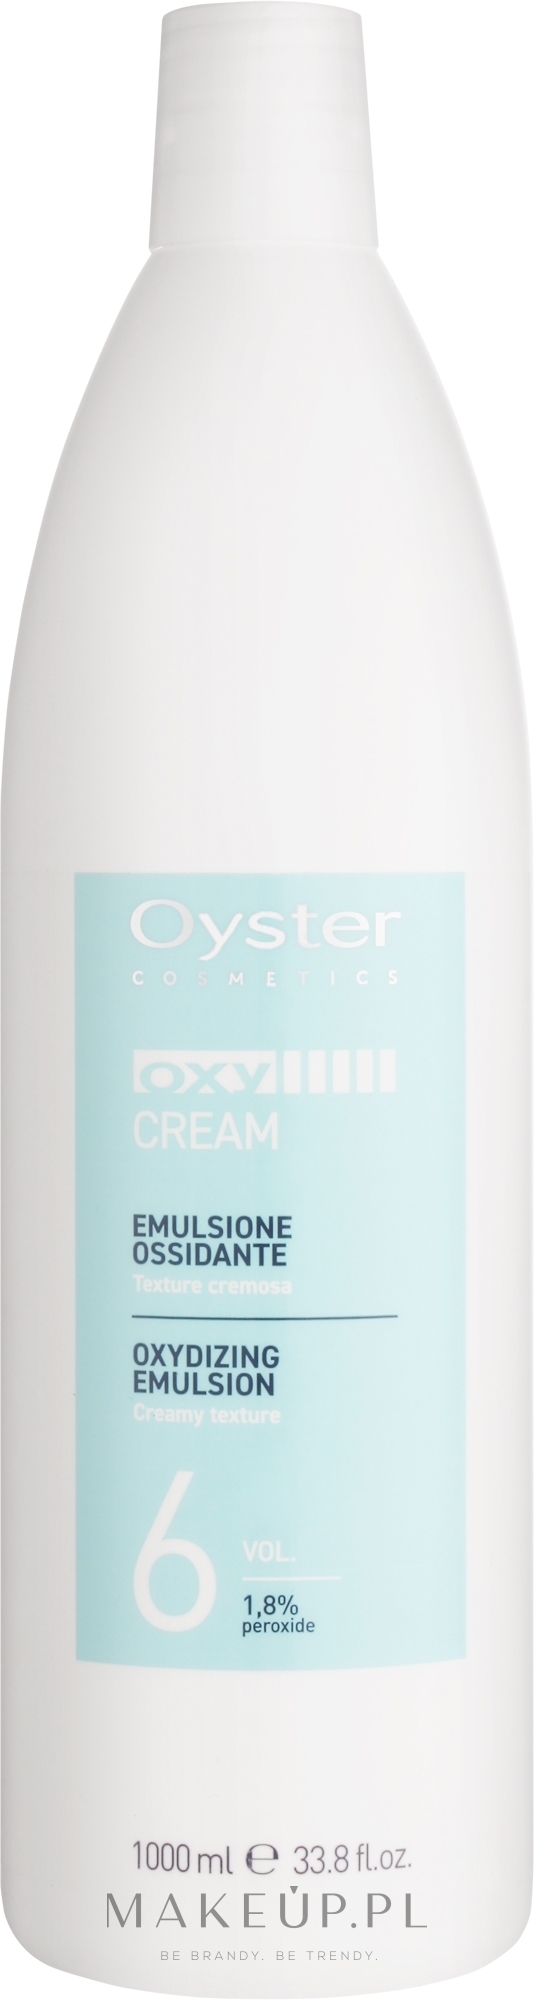 Utleniacz 6 vol. 1,8% - Oyster Cosmetics Oxy Cream Oxydant — Zdjęcie 1000 ml